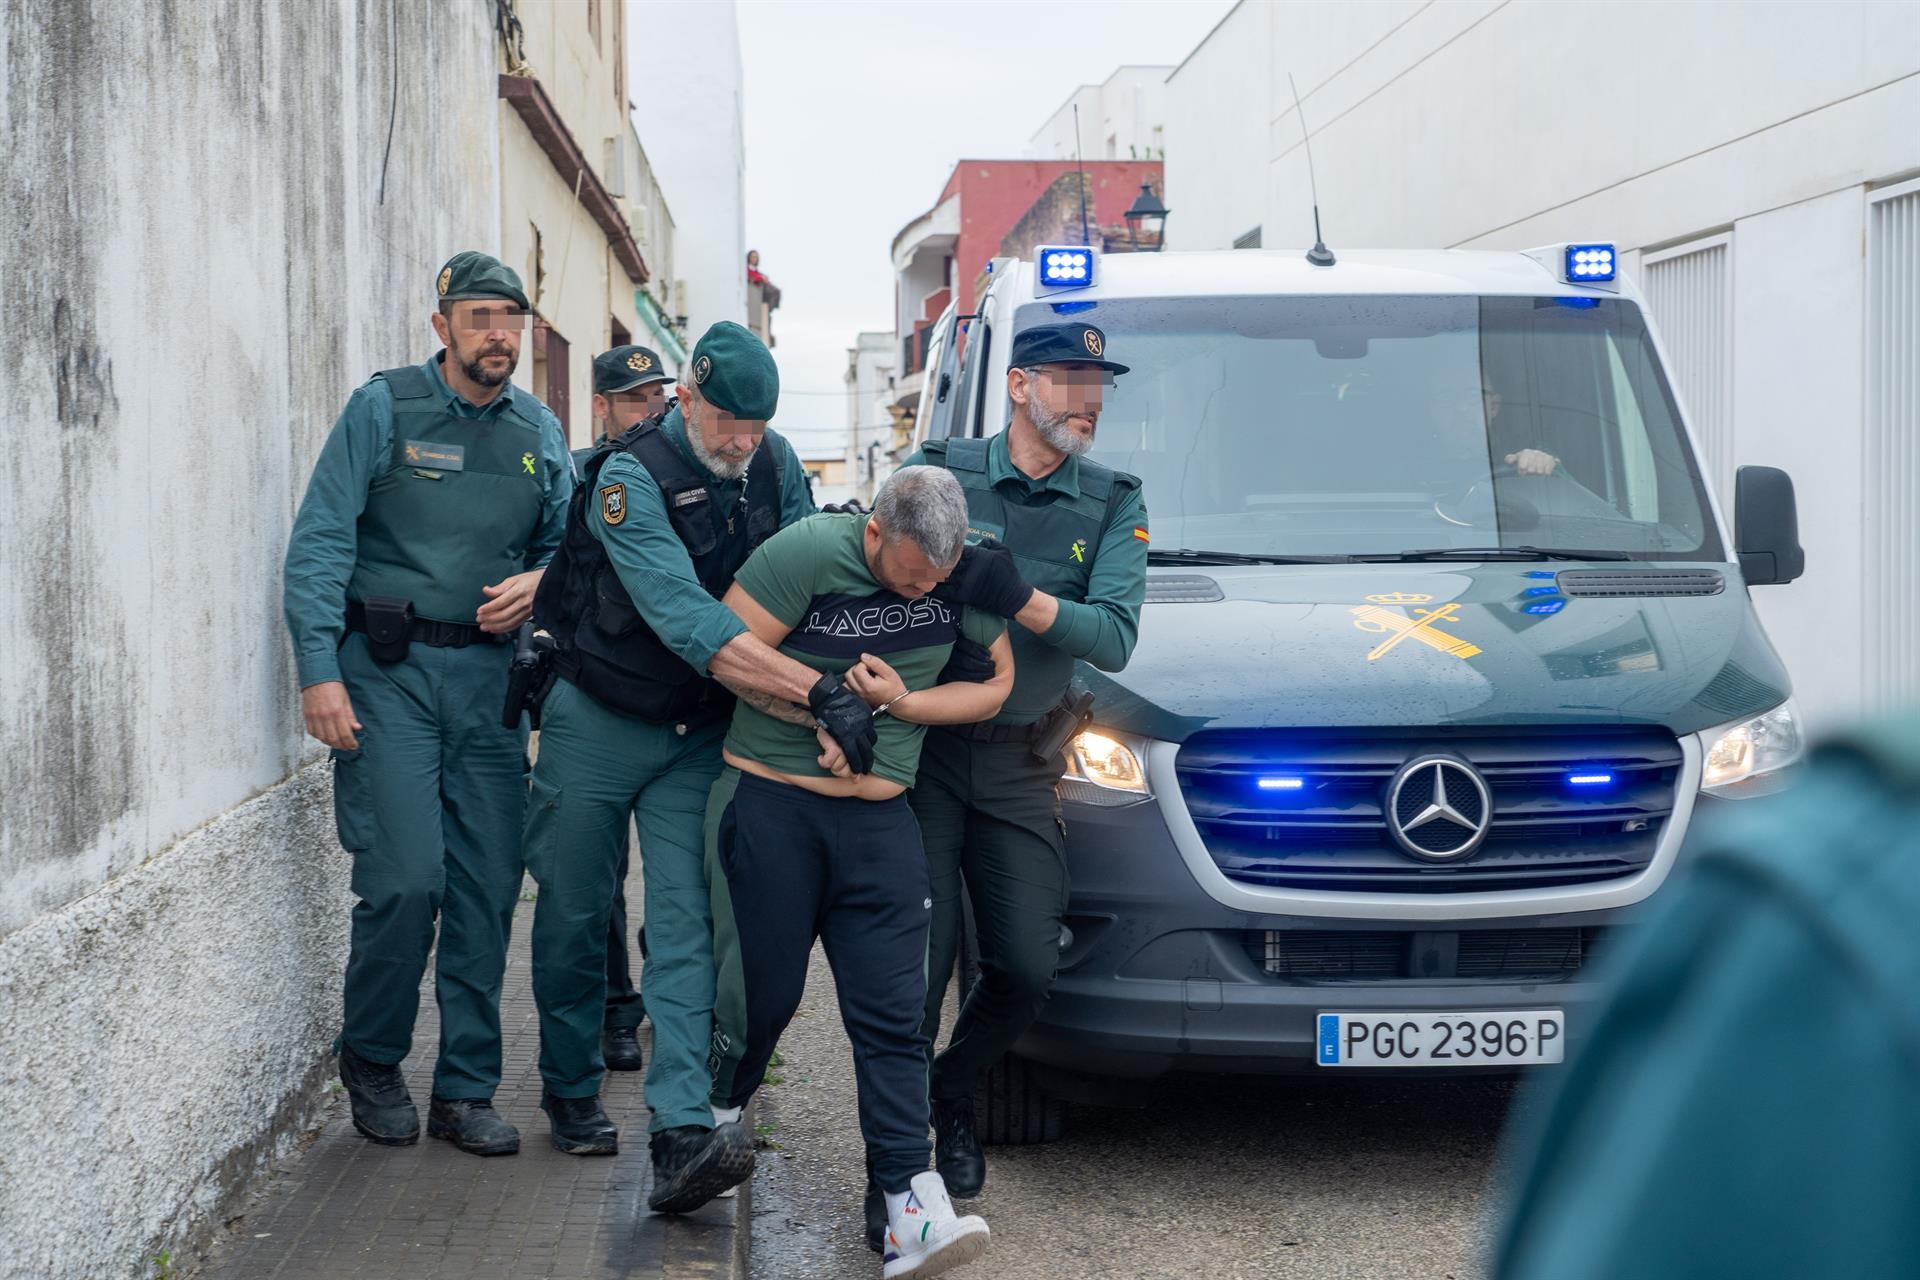 Los detenidos a su llegada a los juzgados este lunes en Barbate.| EUROPA PRESS